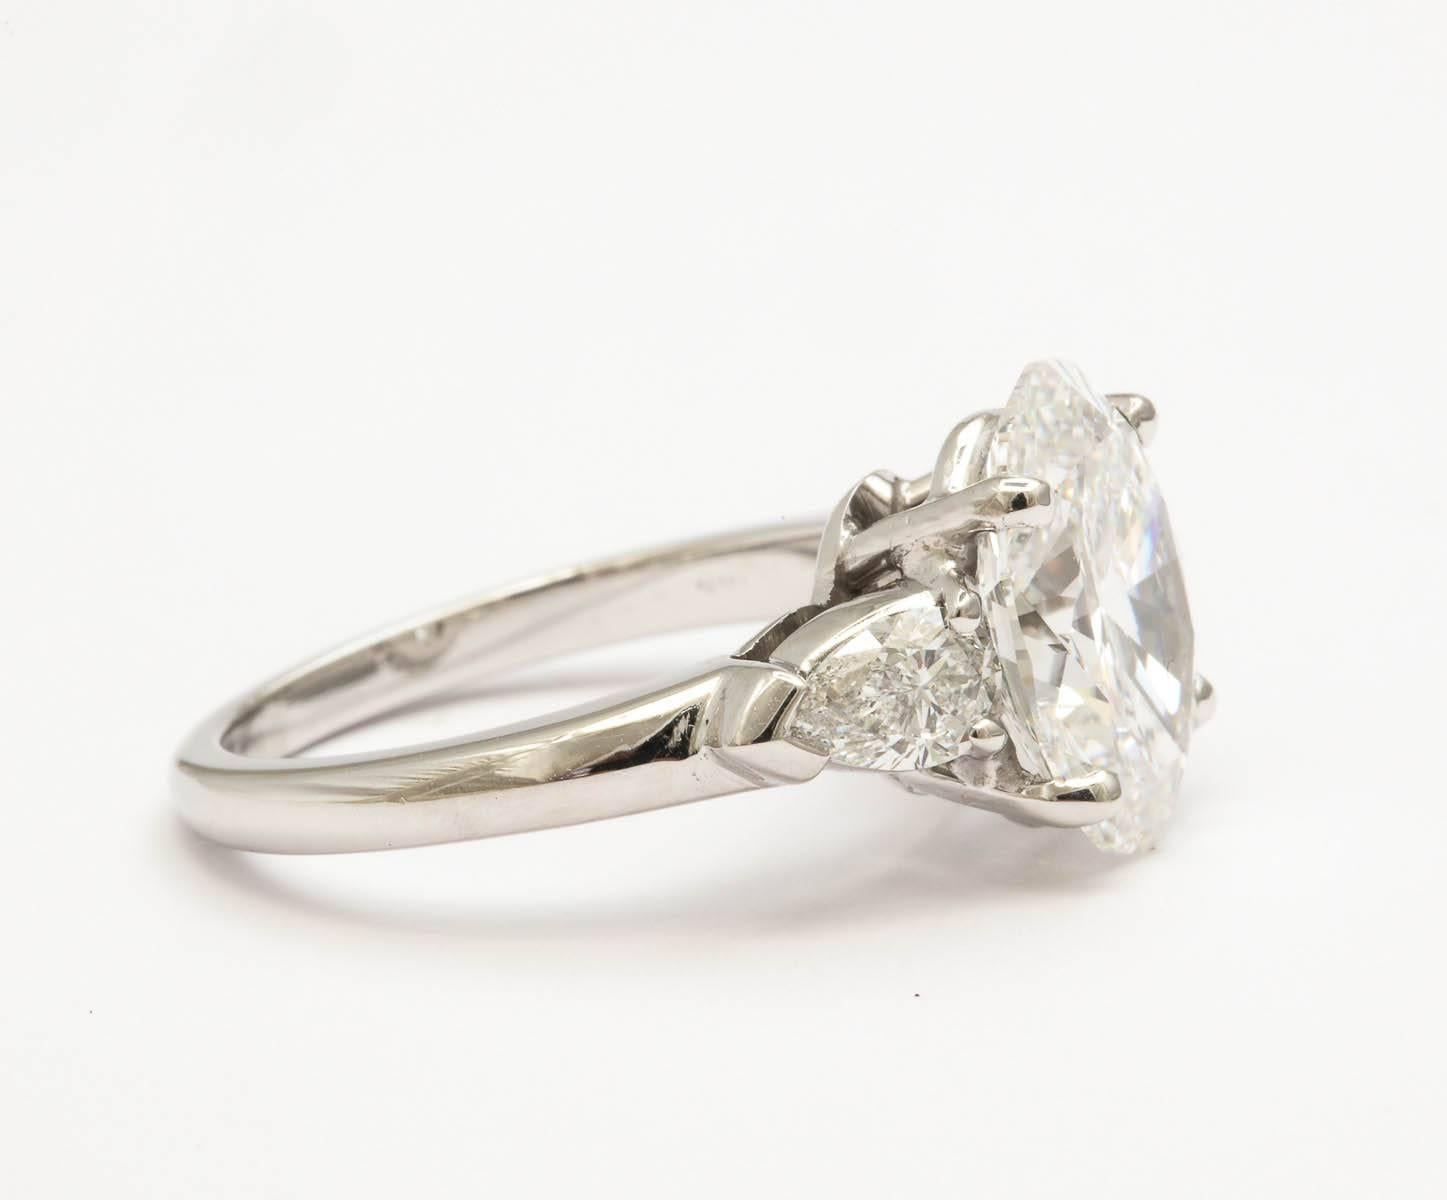 3.25 carat oval diamond ring